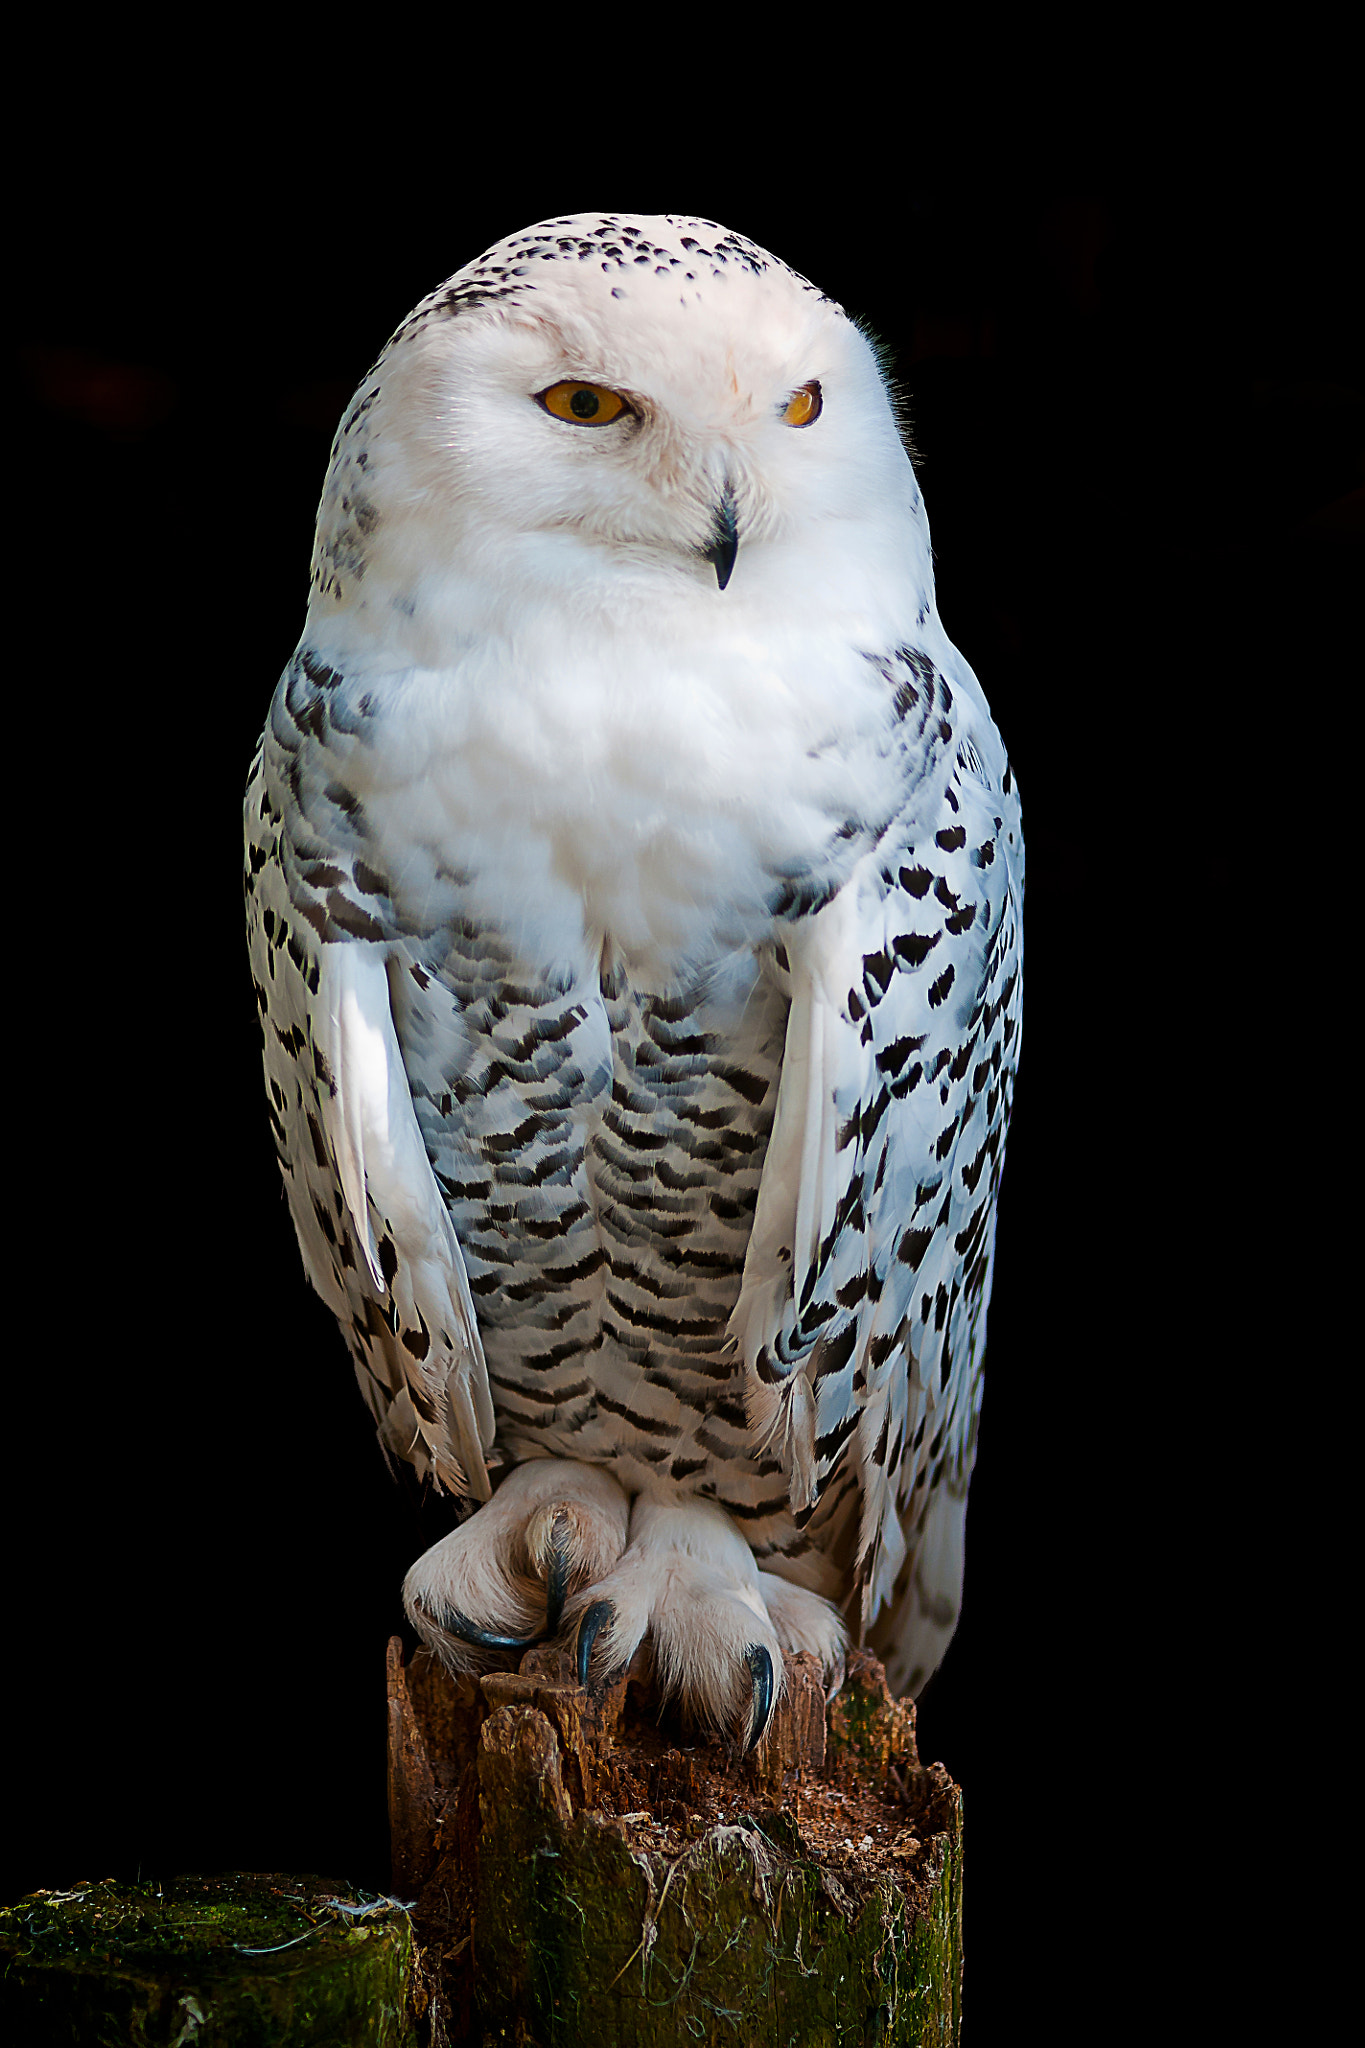 Sony Alpha DSLR-A700 sample photo. Snow owl photography